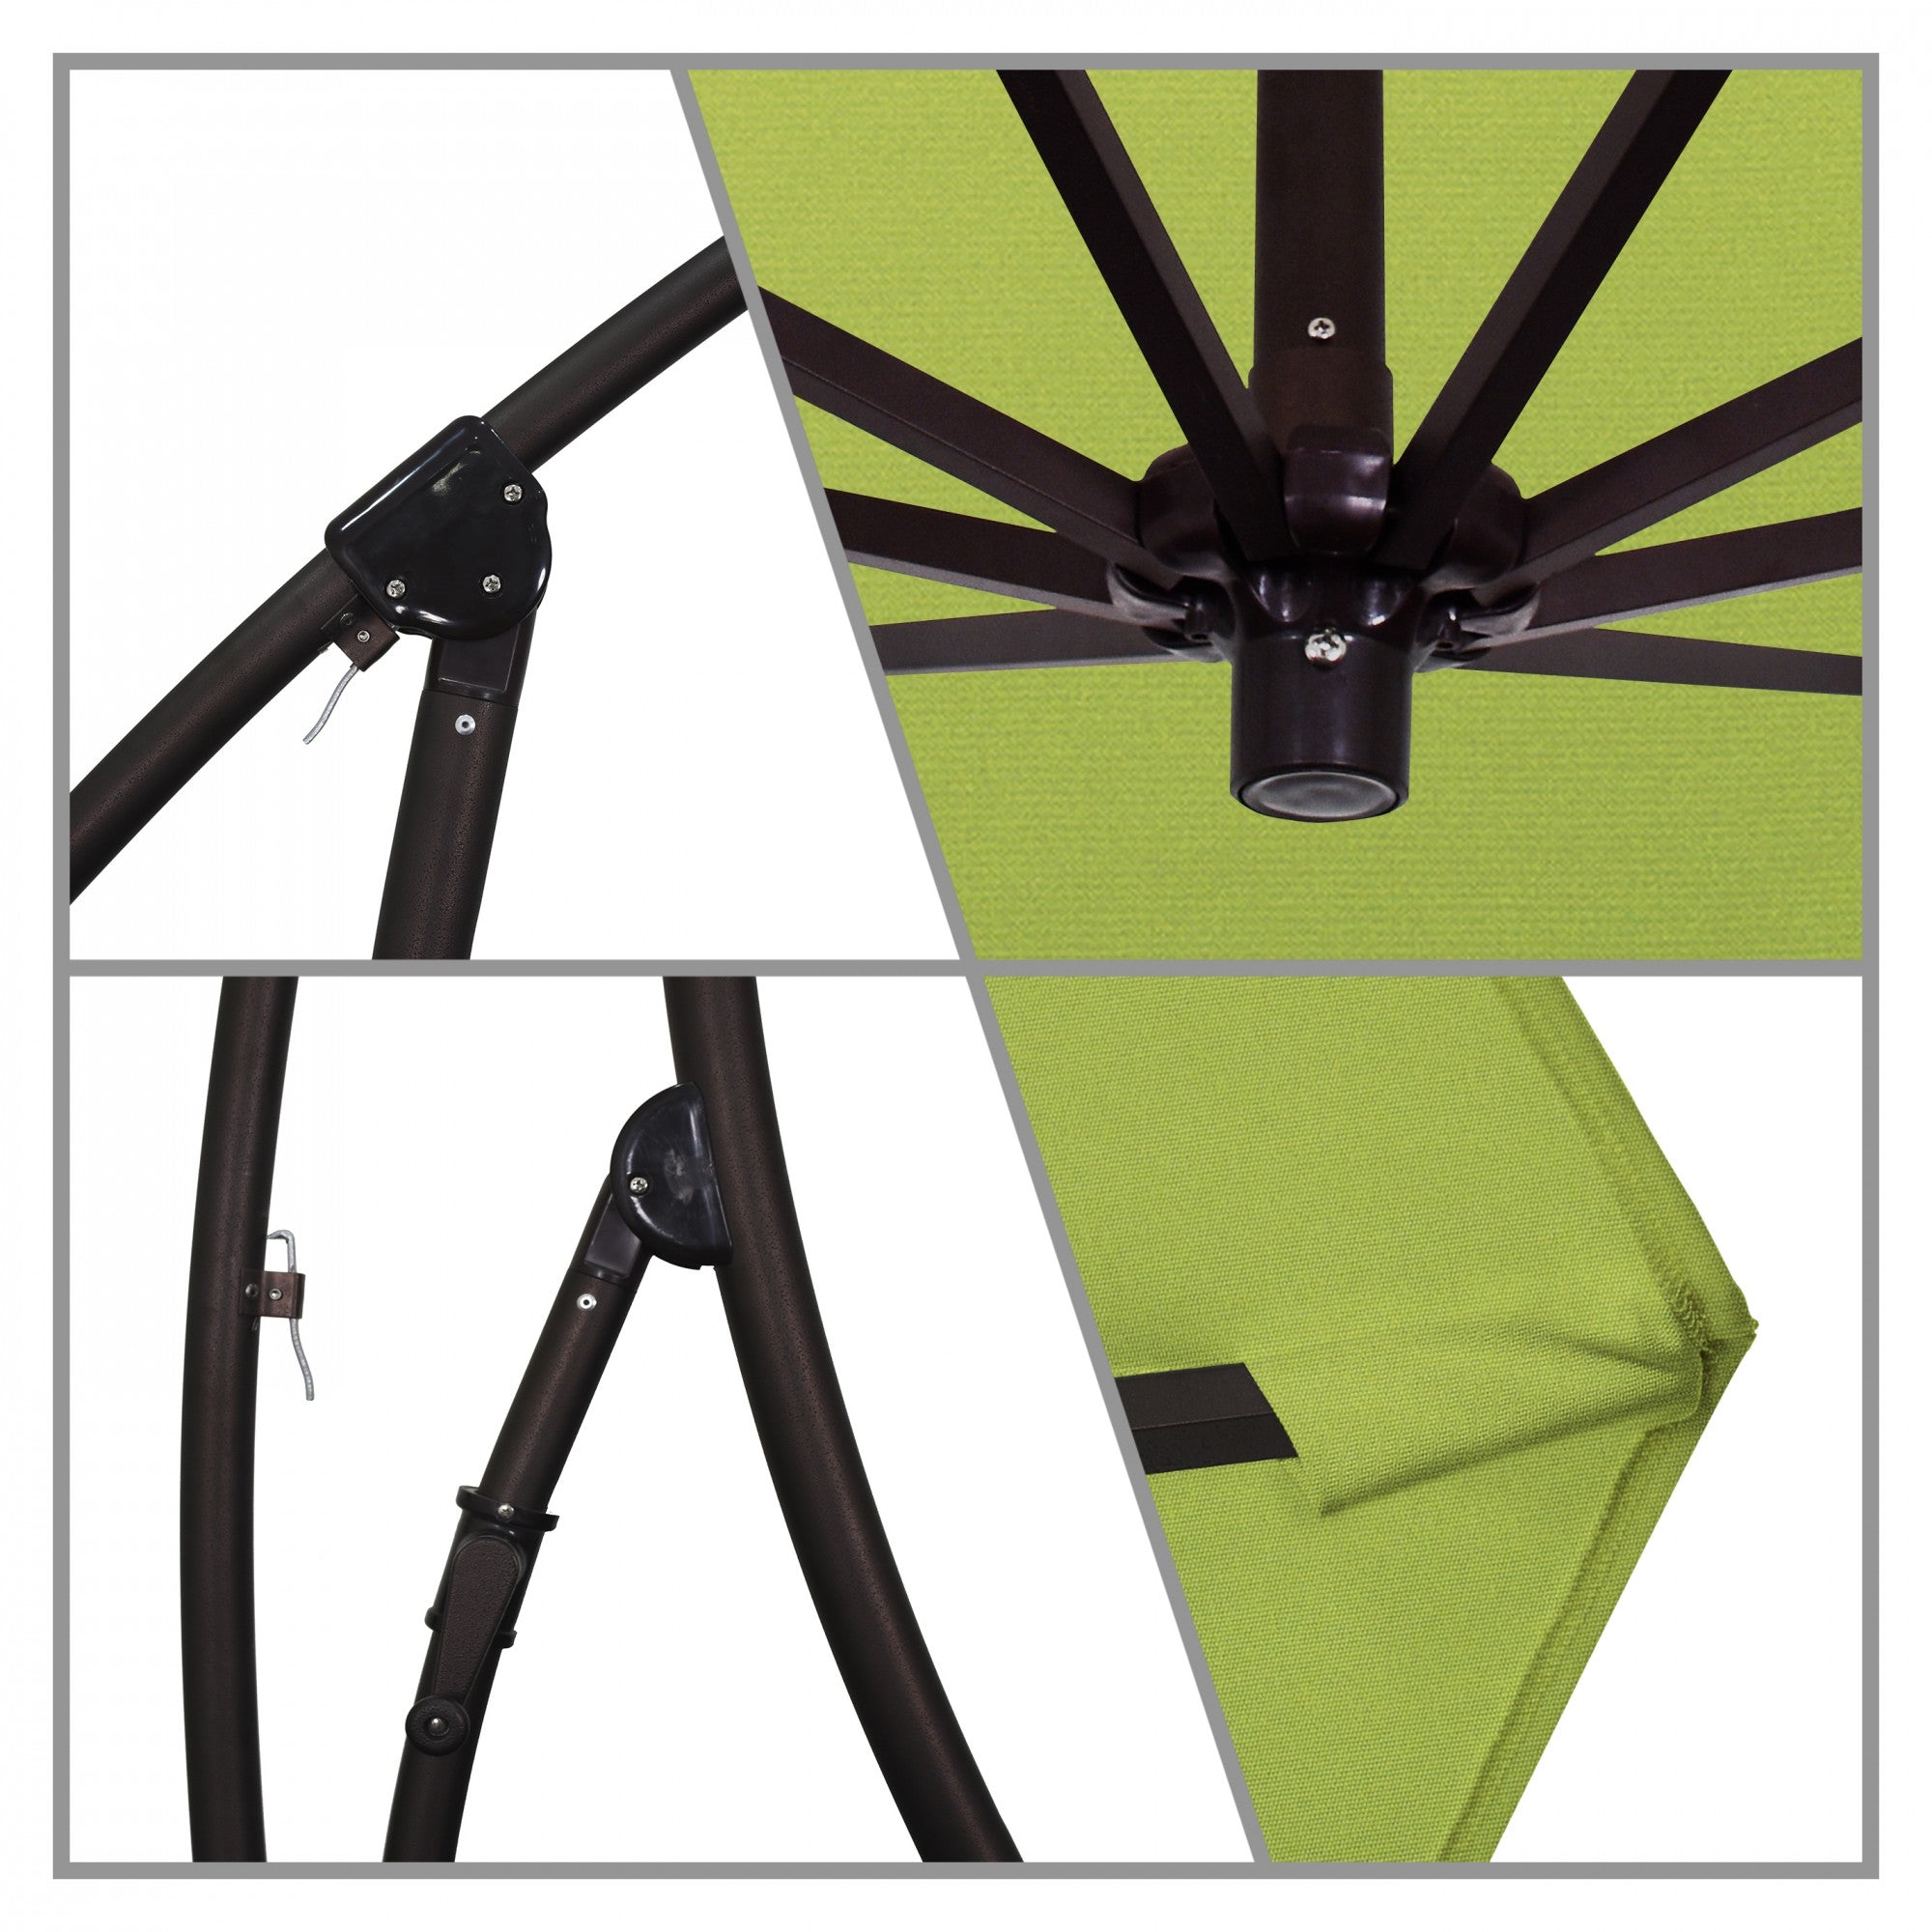 California Umbrella - 9' - Cantilever Umbrella - Aluminum Pole - Macaw - Sunbrella  - BA908117-5429